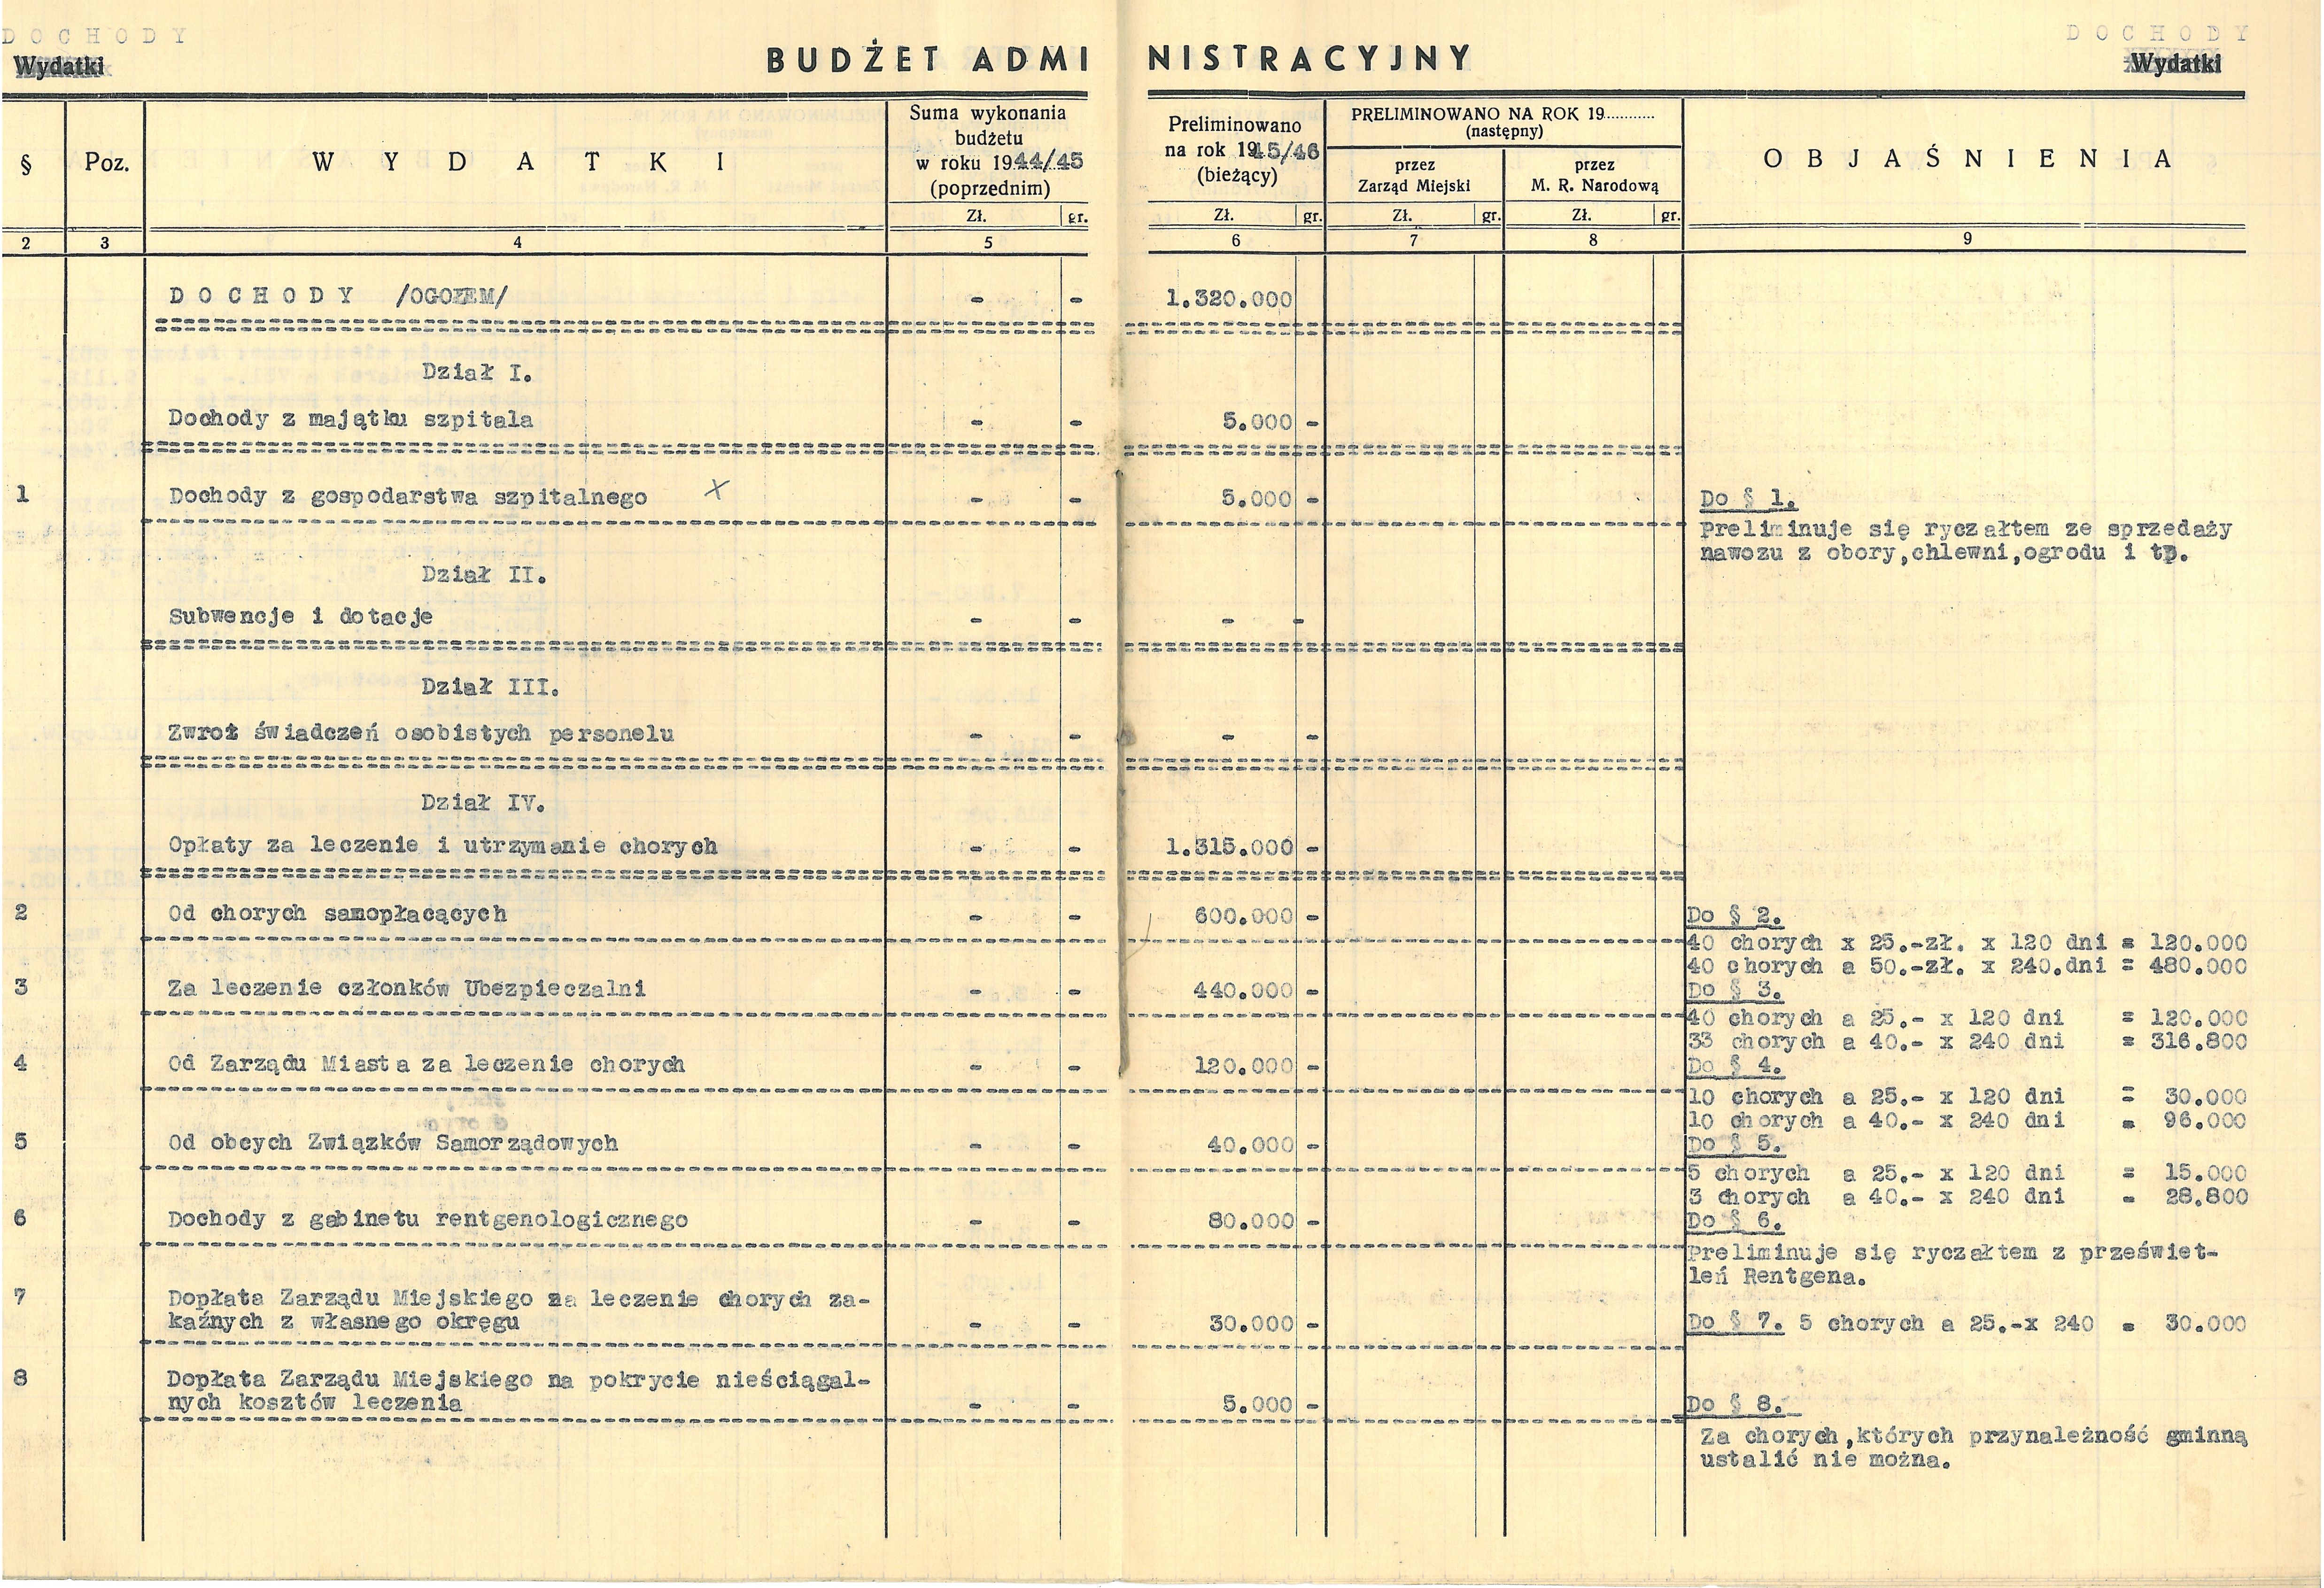 Budżet szpitala na rok 1945/46.